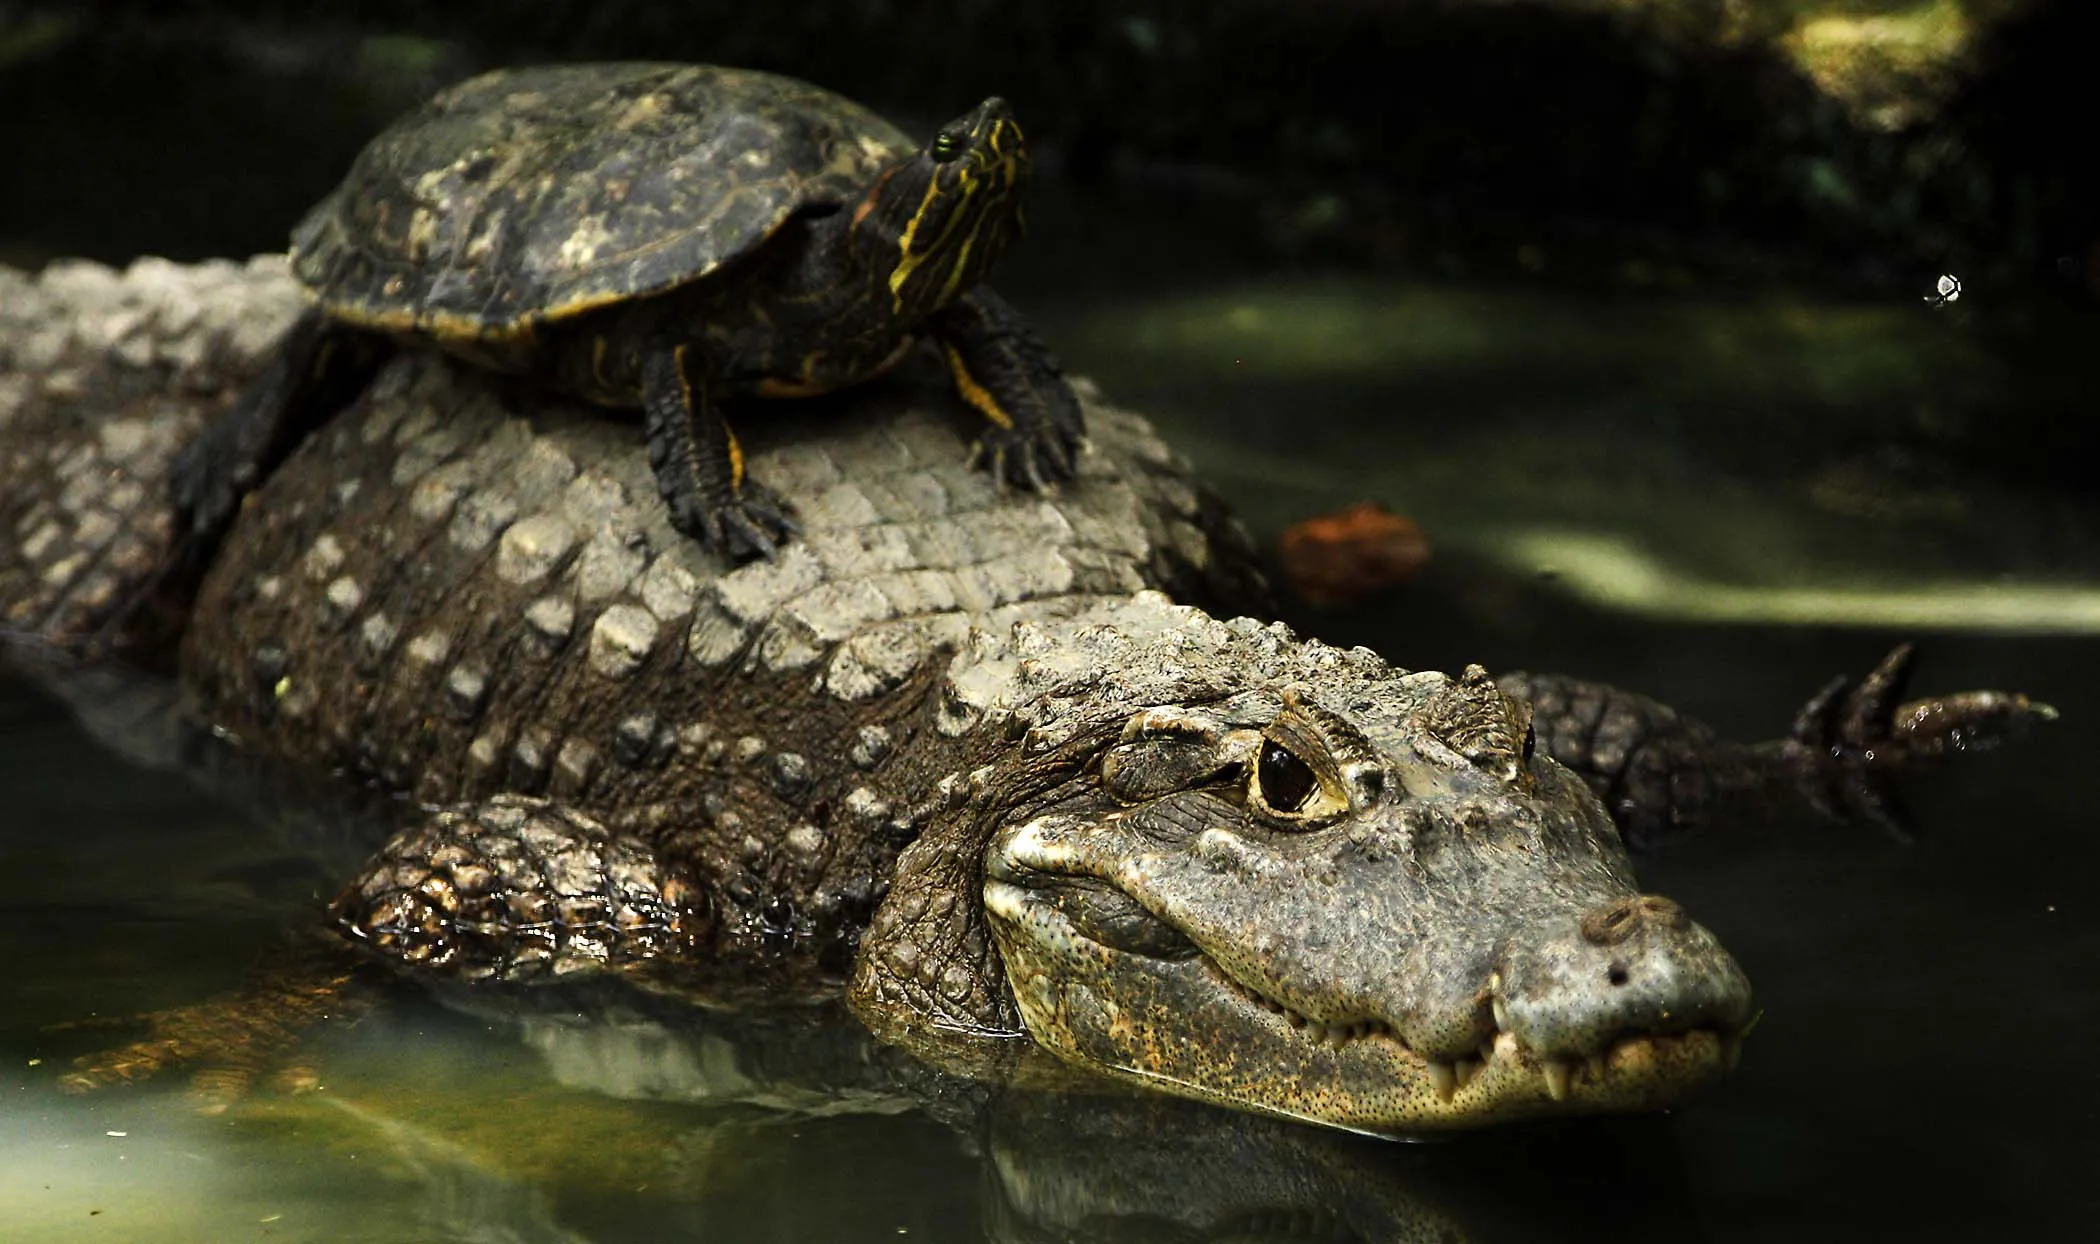 Змеи относятся к отряду черепахи чешуйчатые крокодилы. Пресмыкающиеся Аллигатор. Черепаха Аллигатор. Крокодил и черепаха. Череп крокодила.